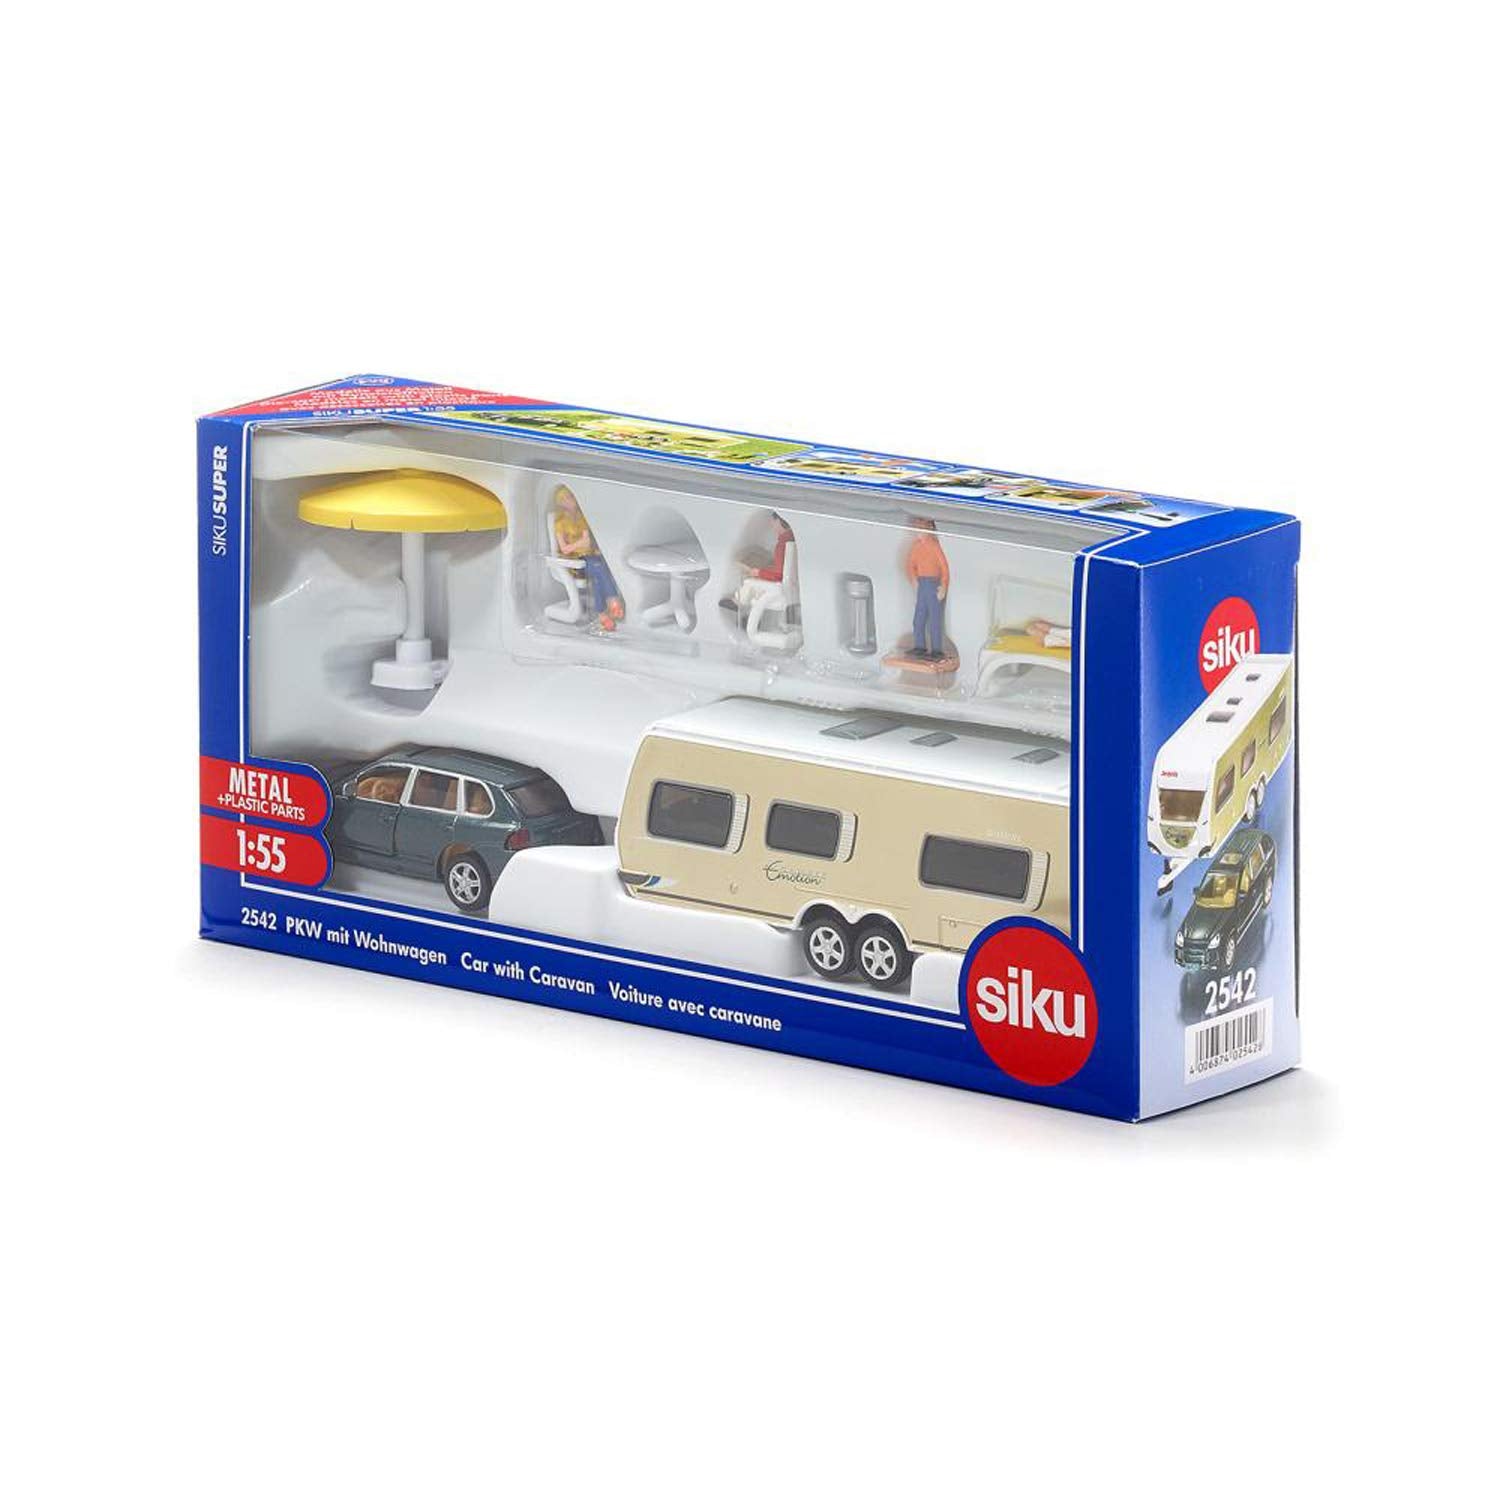 SIKU Car with Caravan - Toy Vehicle - Ages 3+